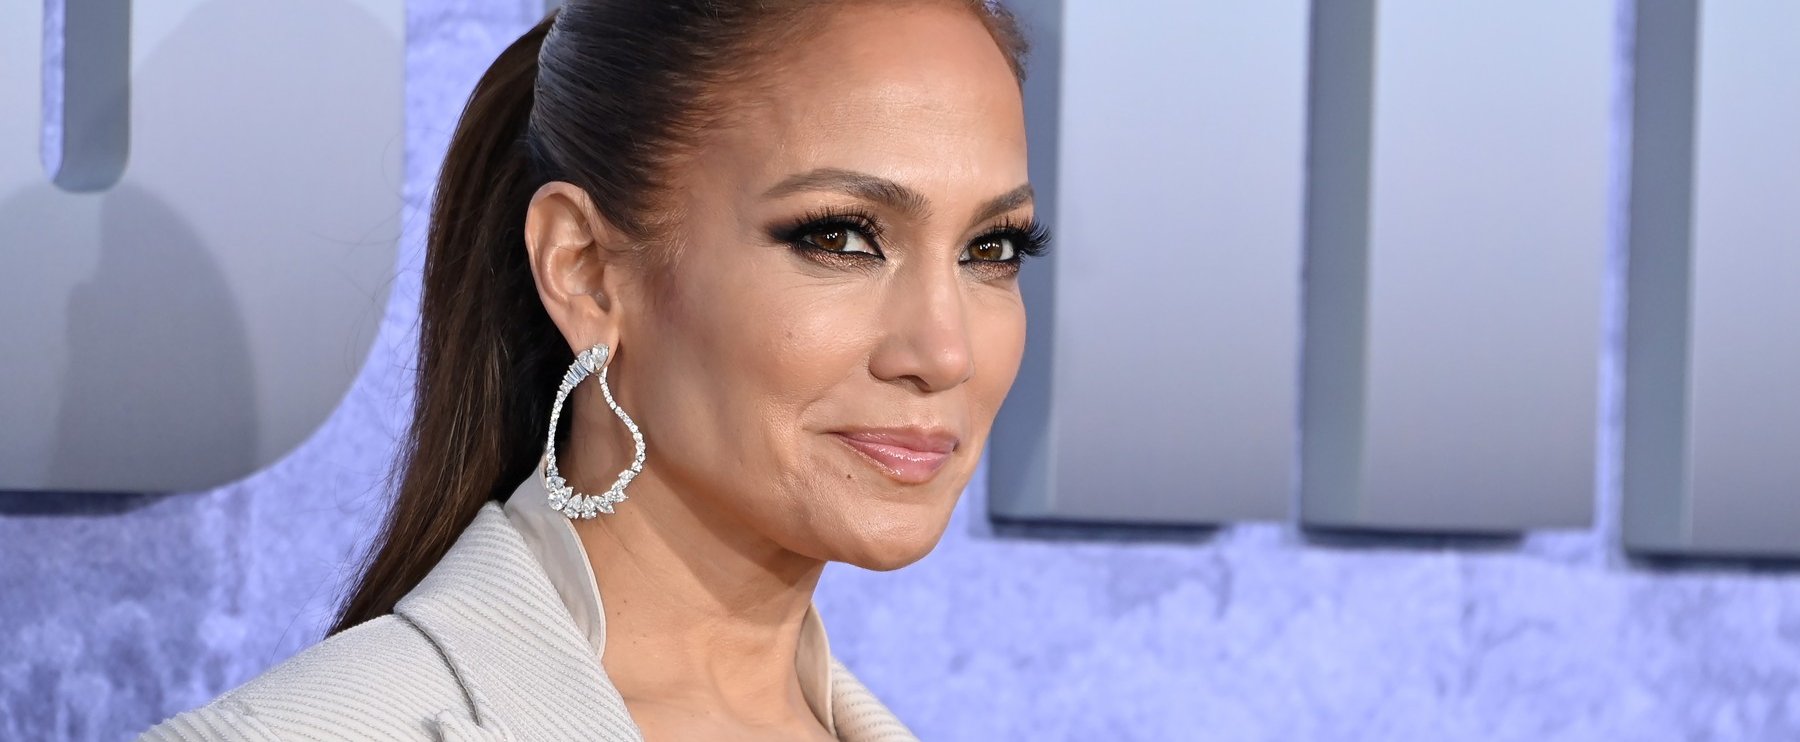 Jennifer Lopezről meglepő lesifotók kerültek ki, ritkán láthatjuk így a világsztárt